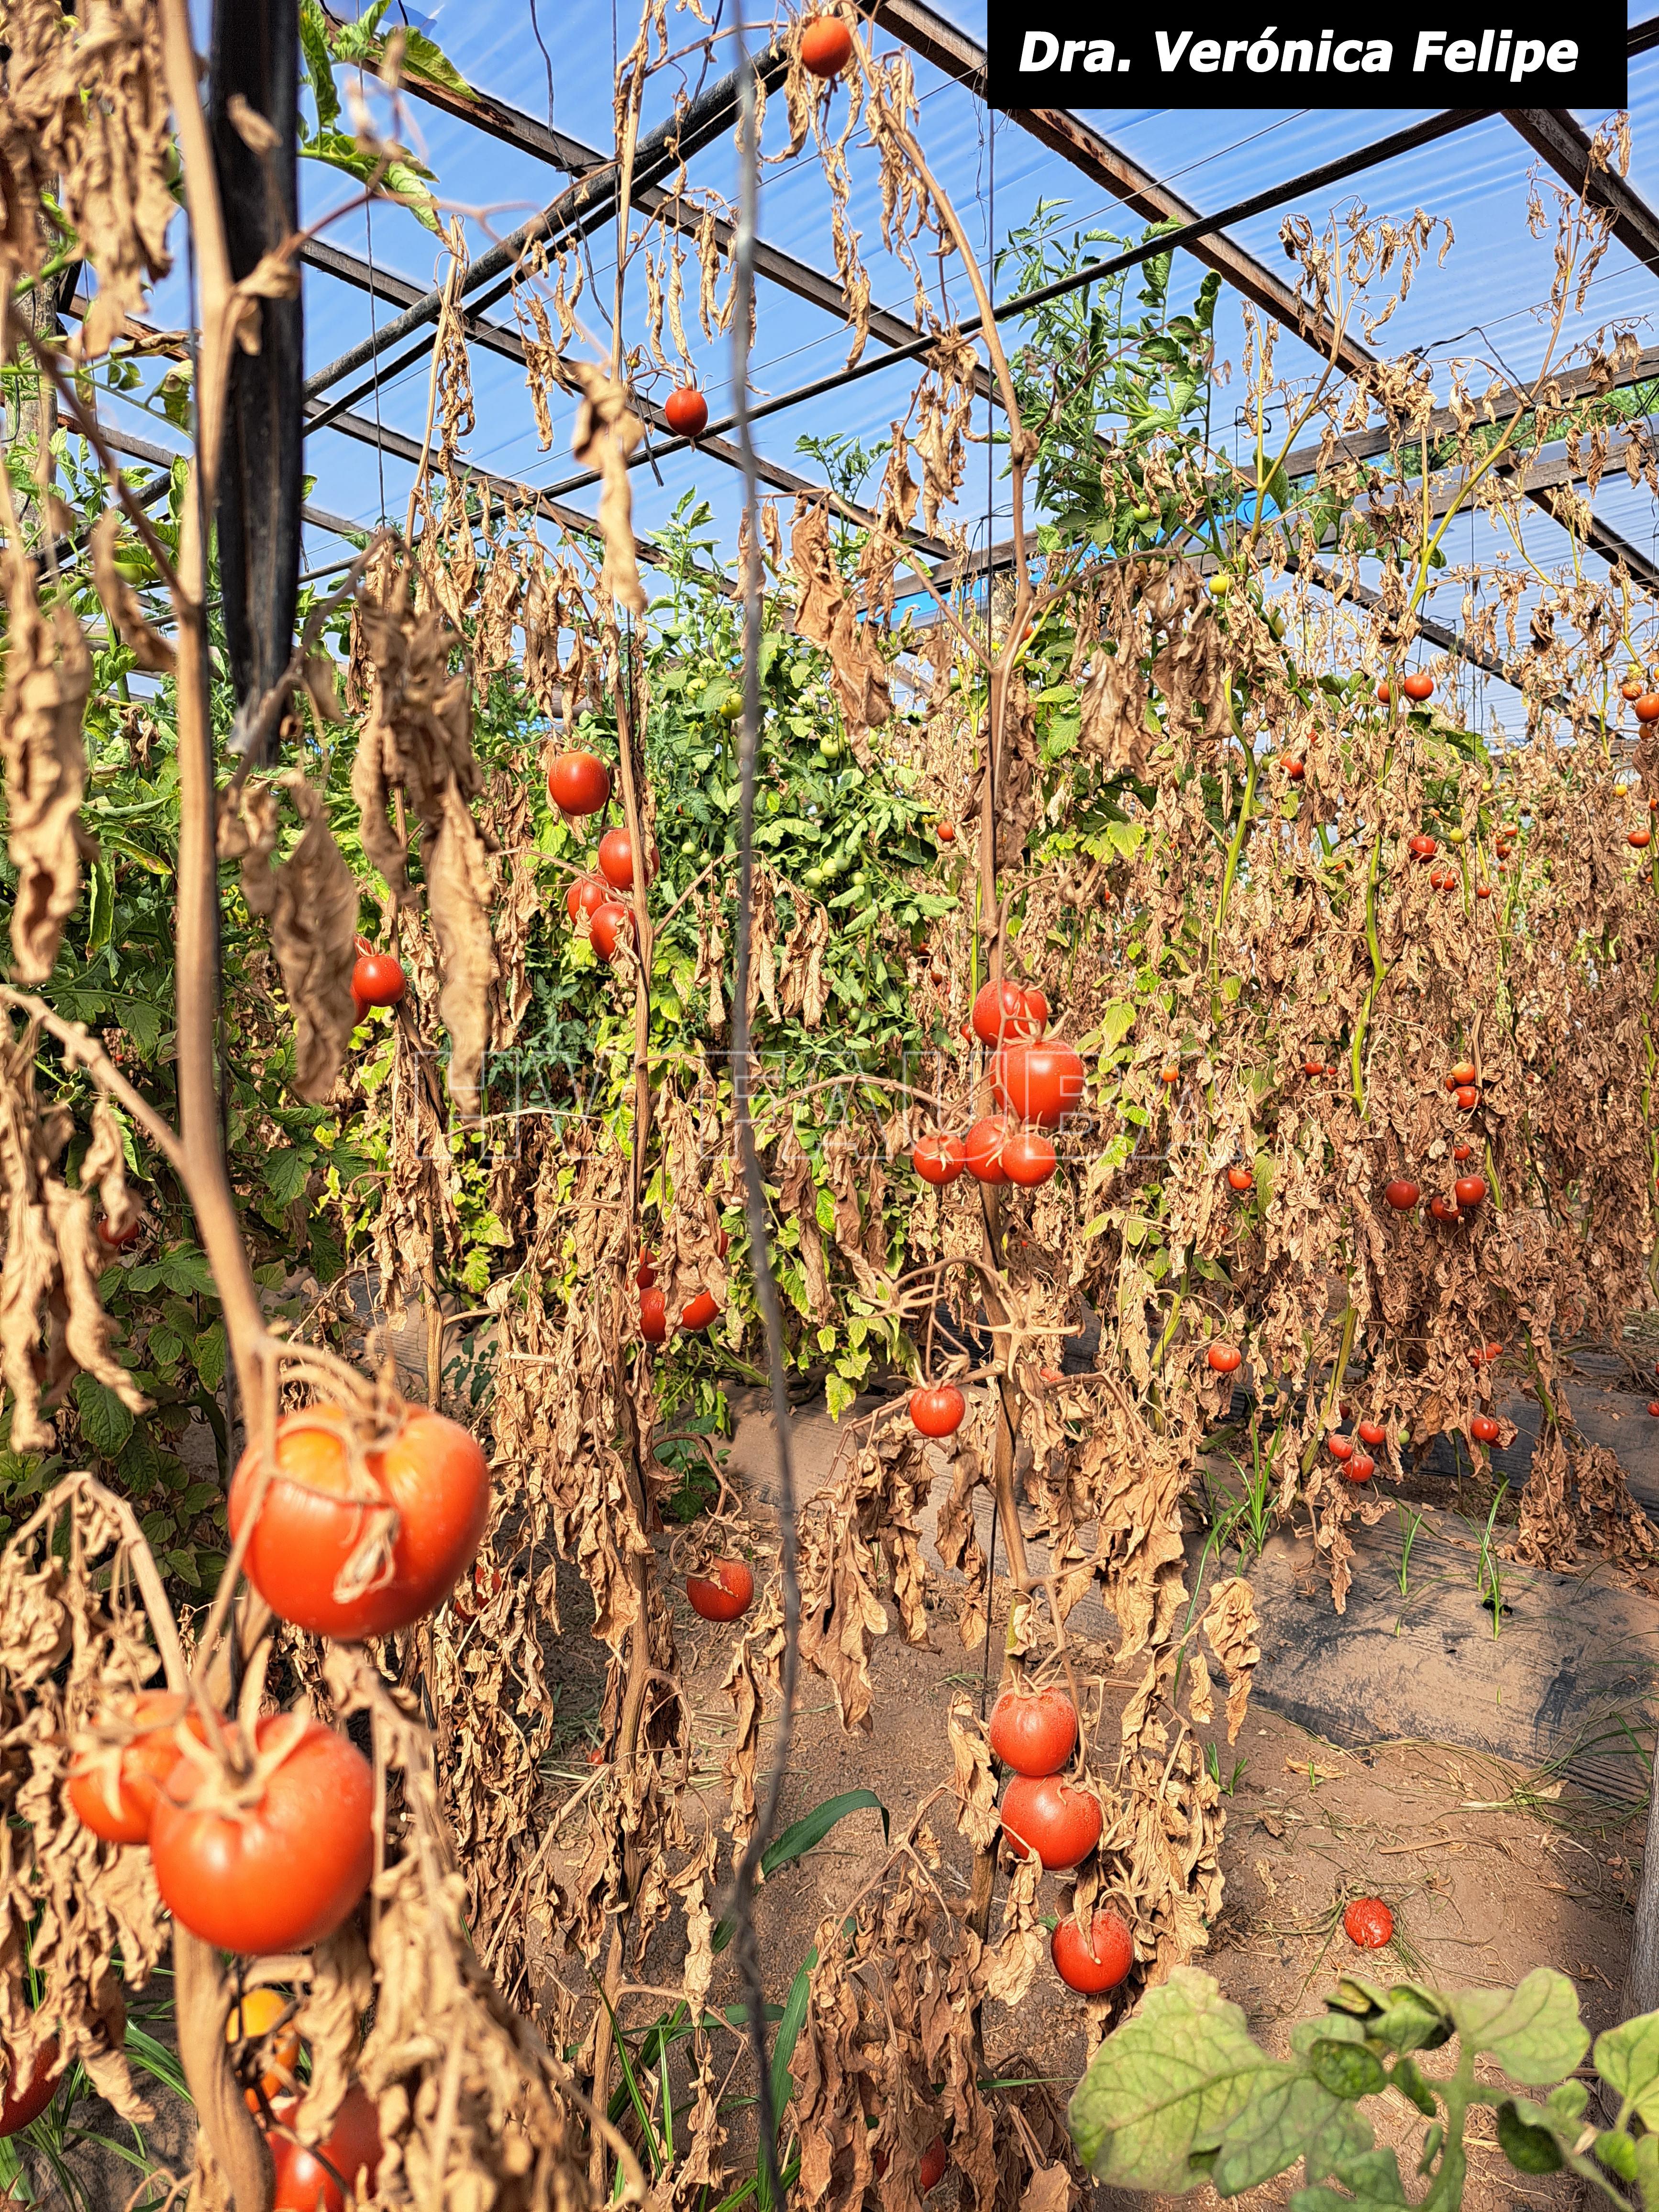 Cultivo de tomate con ataque severo de cancro bacteriano en invernáculo, Villa María, Córdoba. Autora: Dra. Verónica Felipe